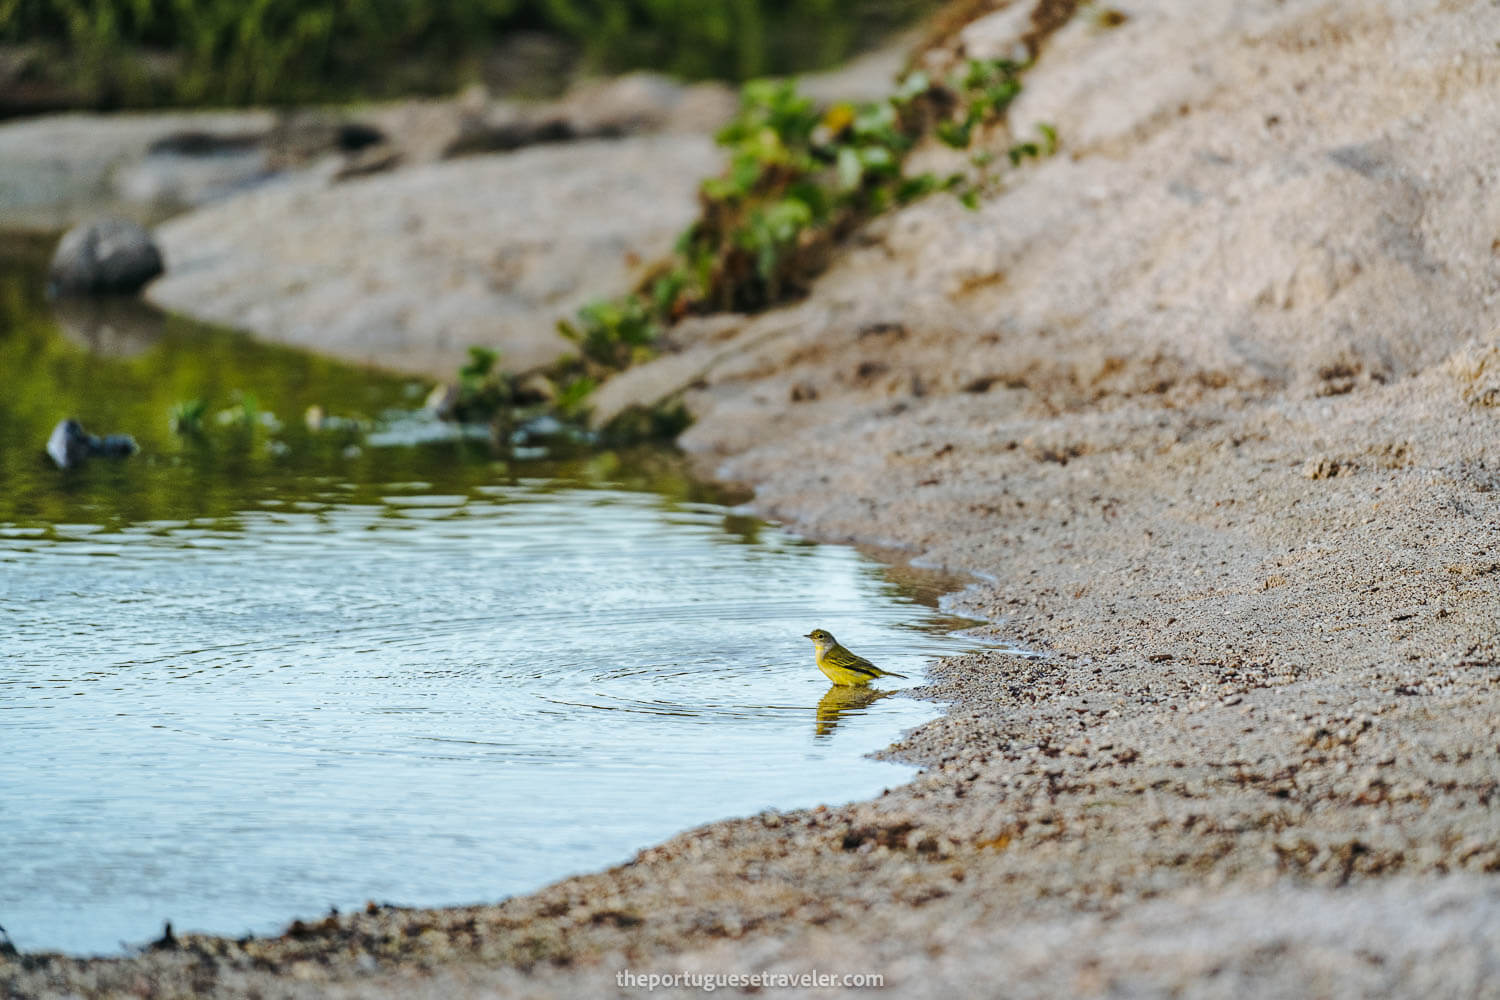 A yellow bird on the lagoon